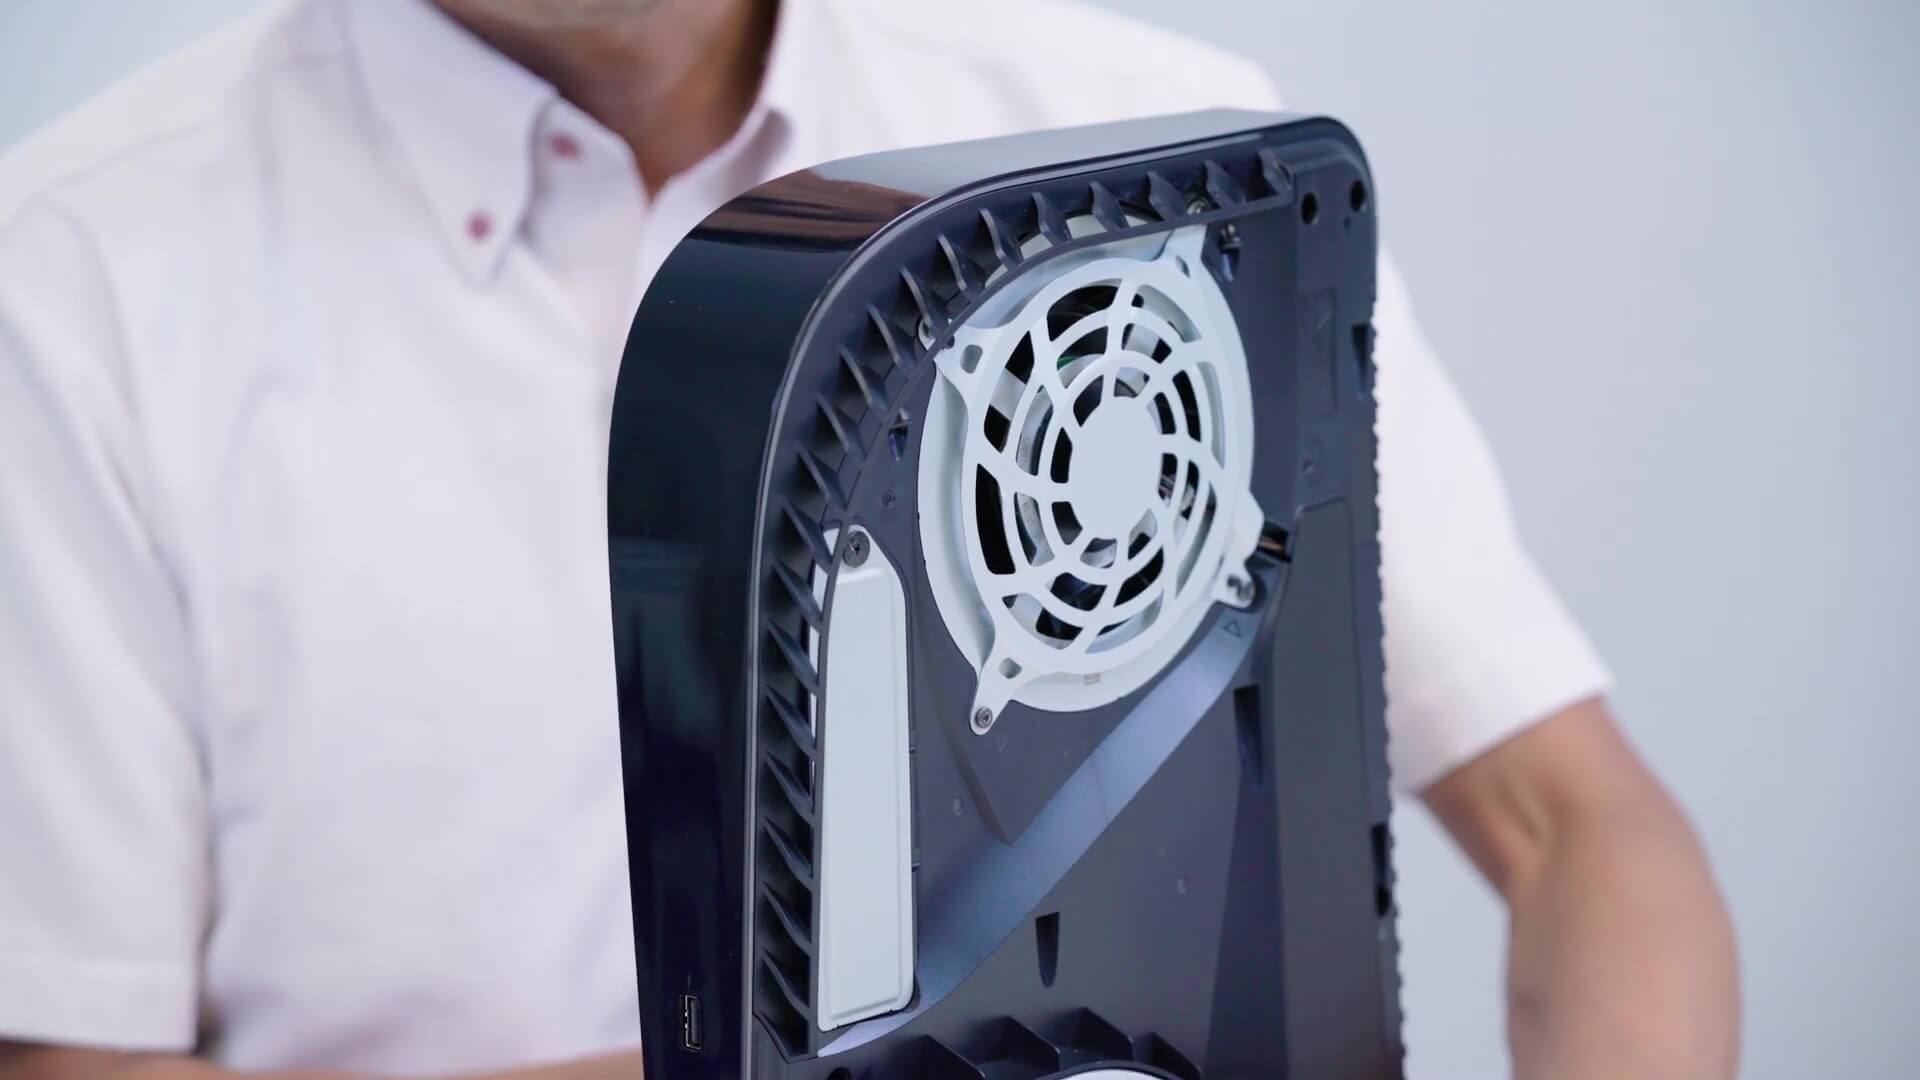 PS5 teardown interior fan